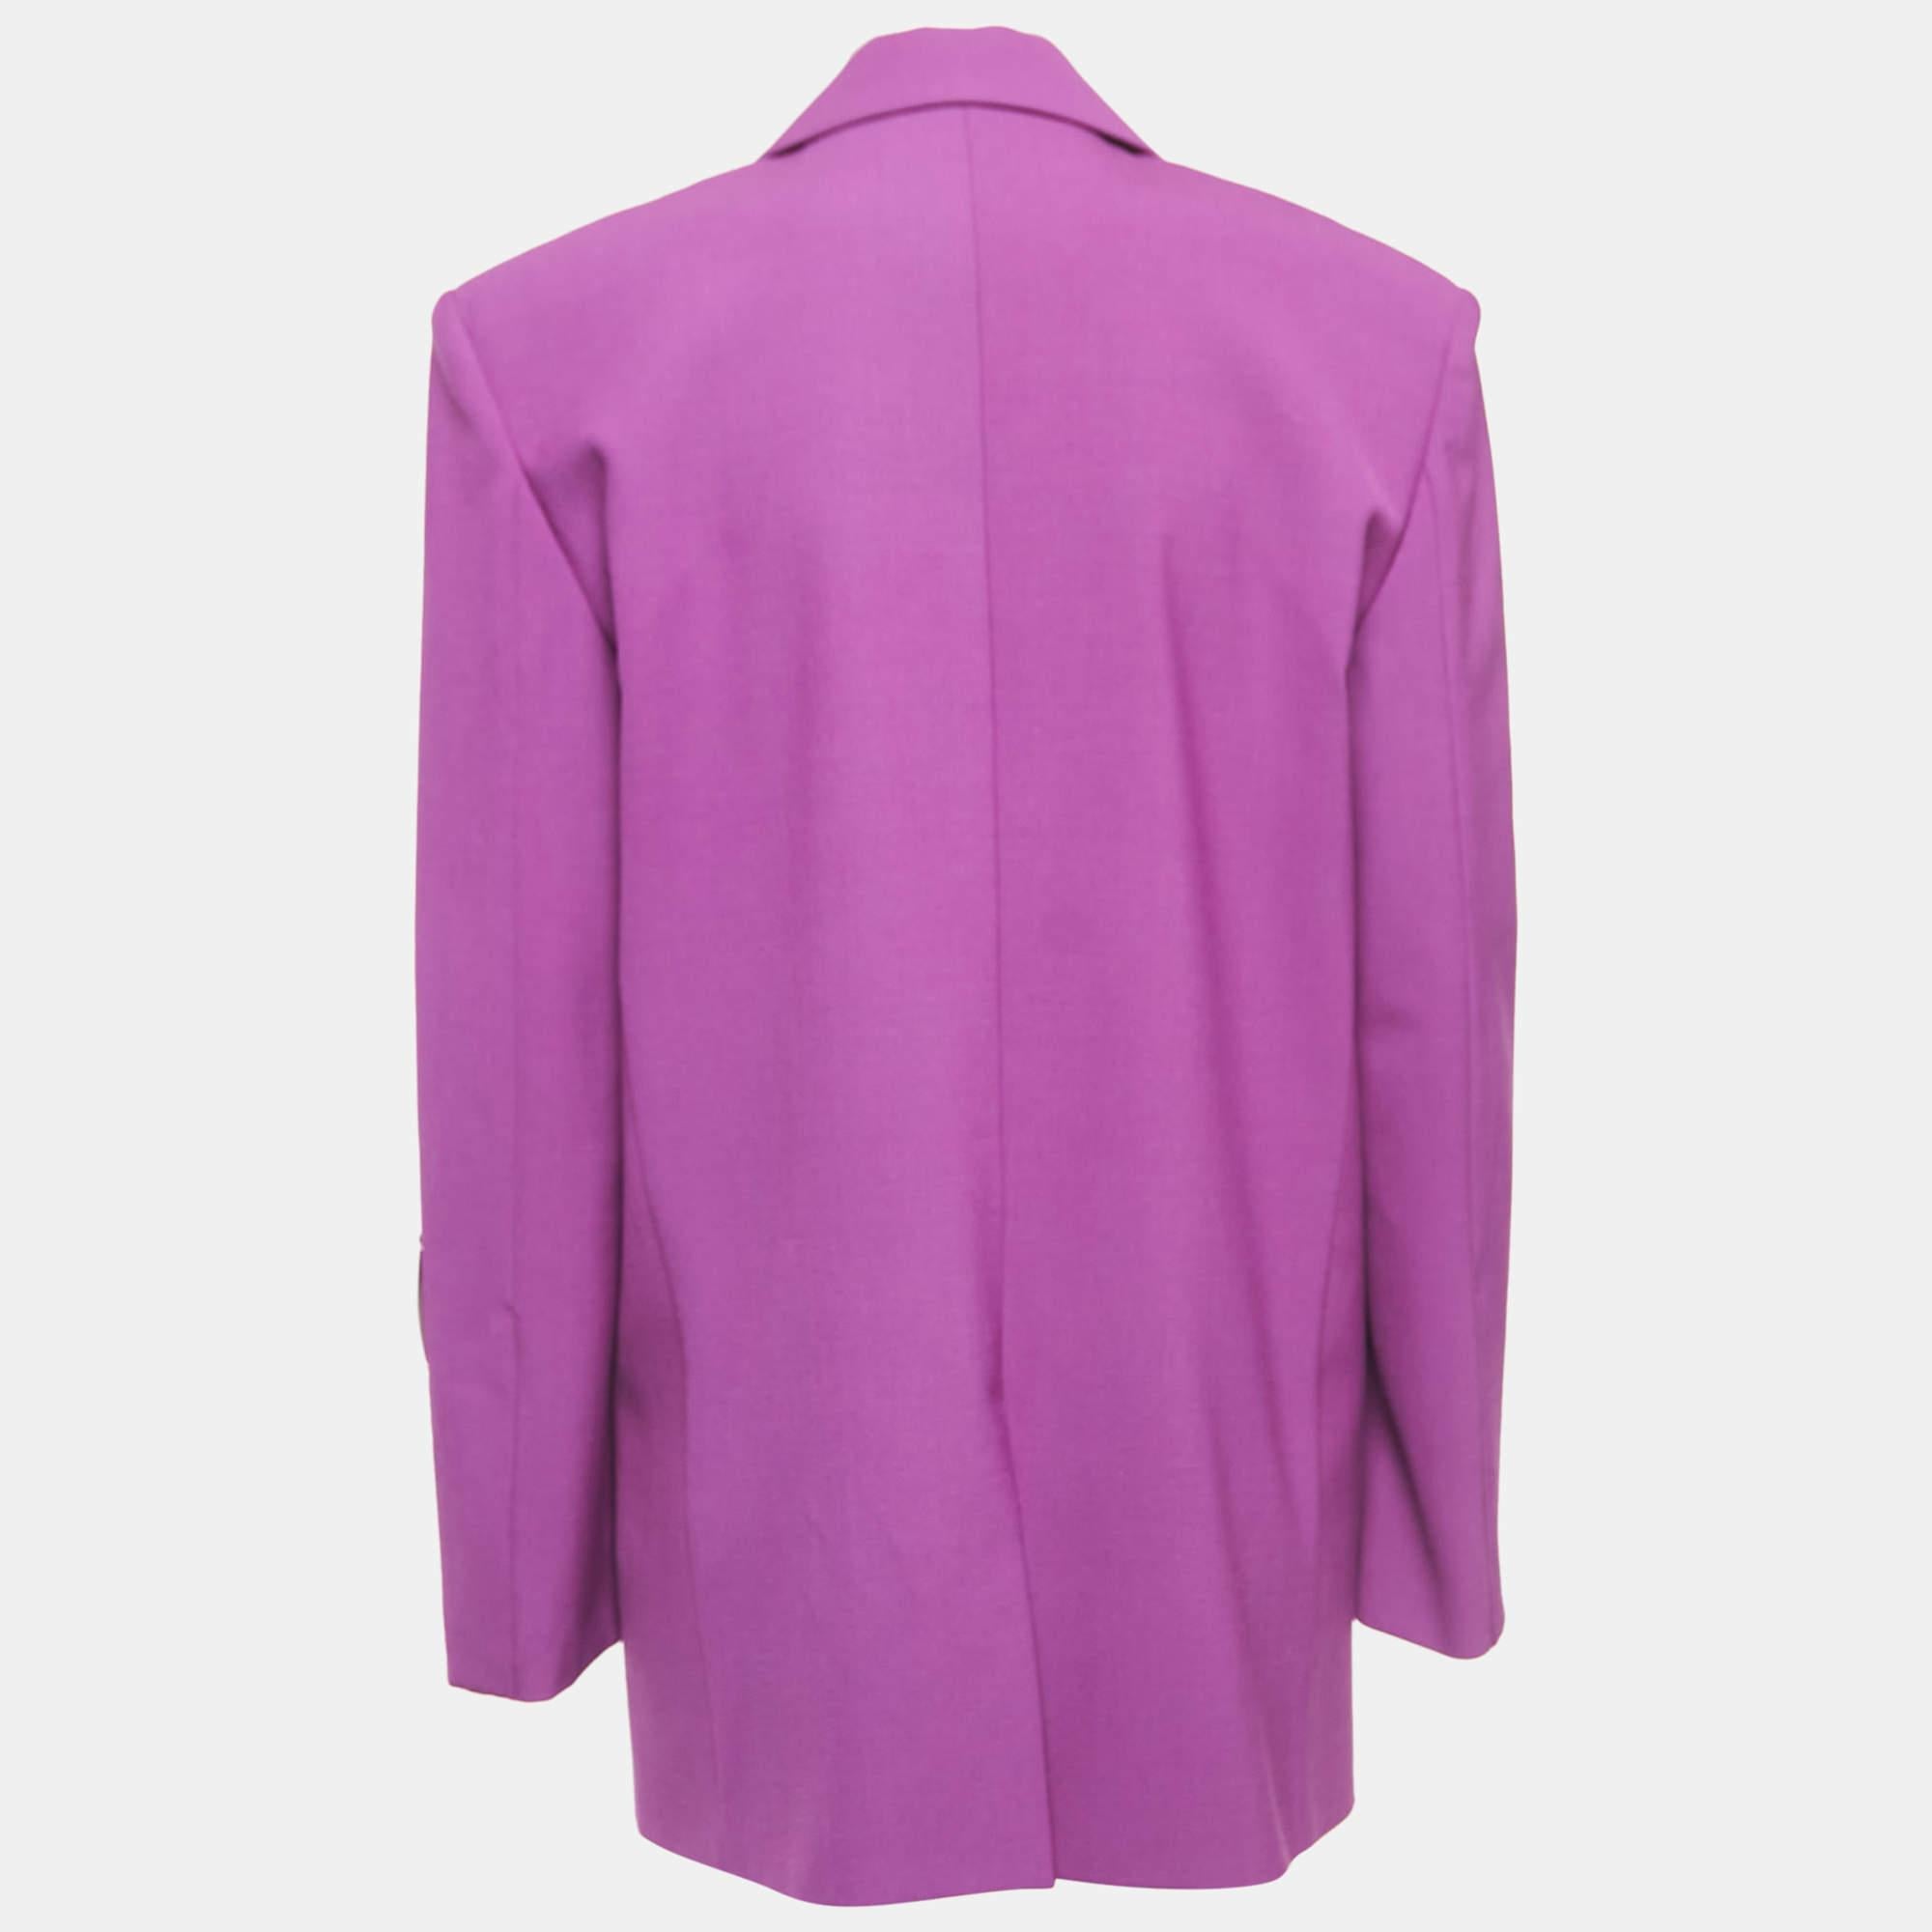 La teinte violette et la forme oversize font de ce blazer Off-White pour femme une pièce convoitée. Il a des manches longues et se ferme sur le devant par un simple boutonnage. Portez-la pour un look chic sans effort.

